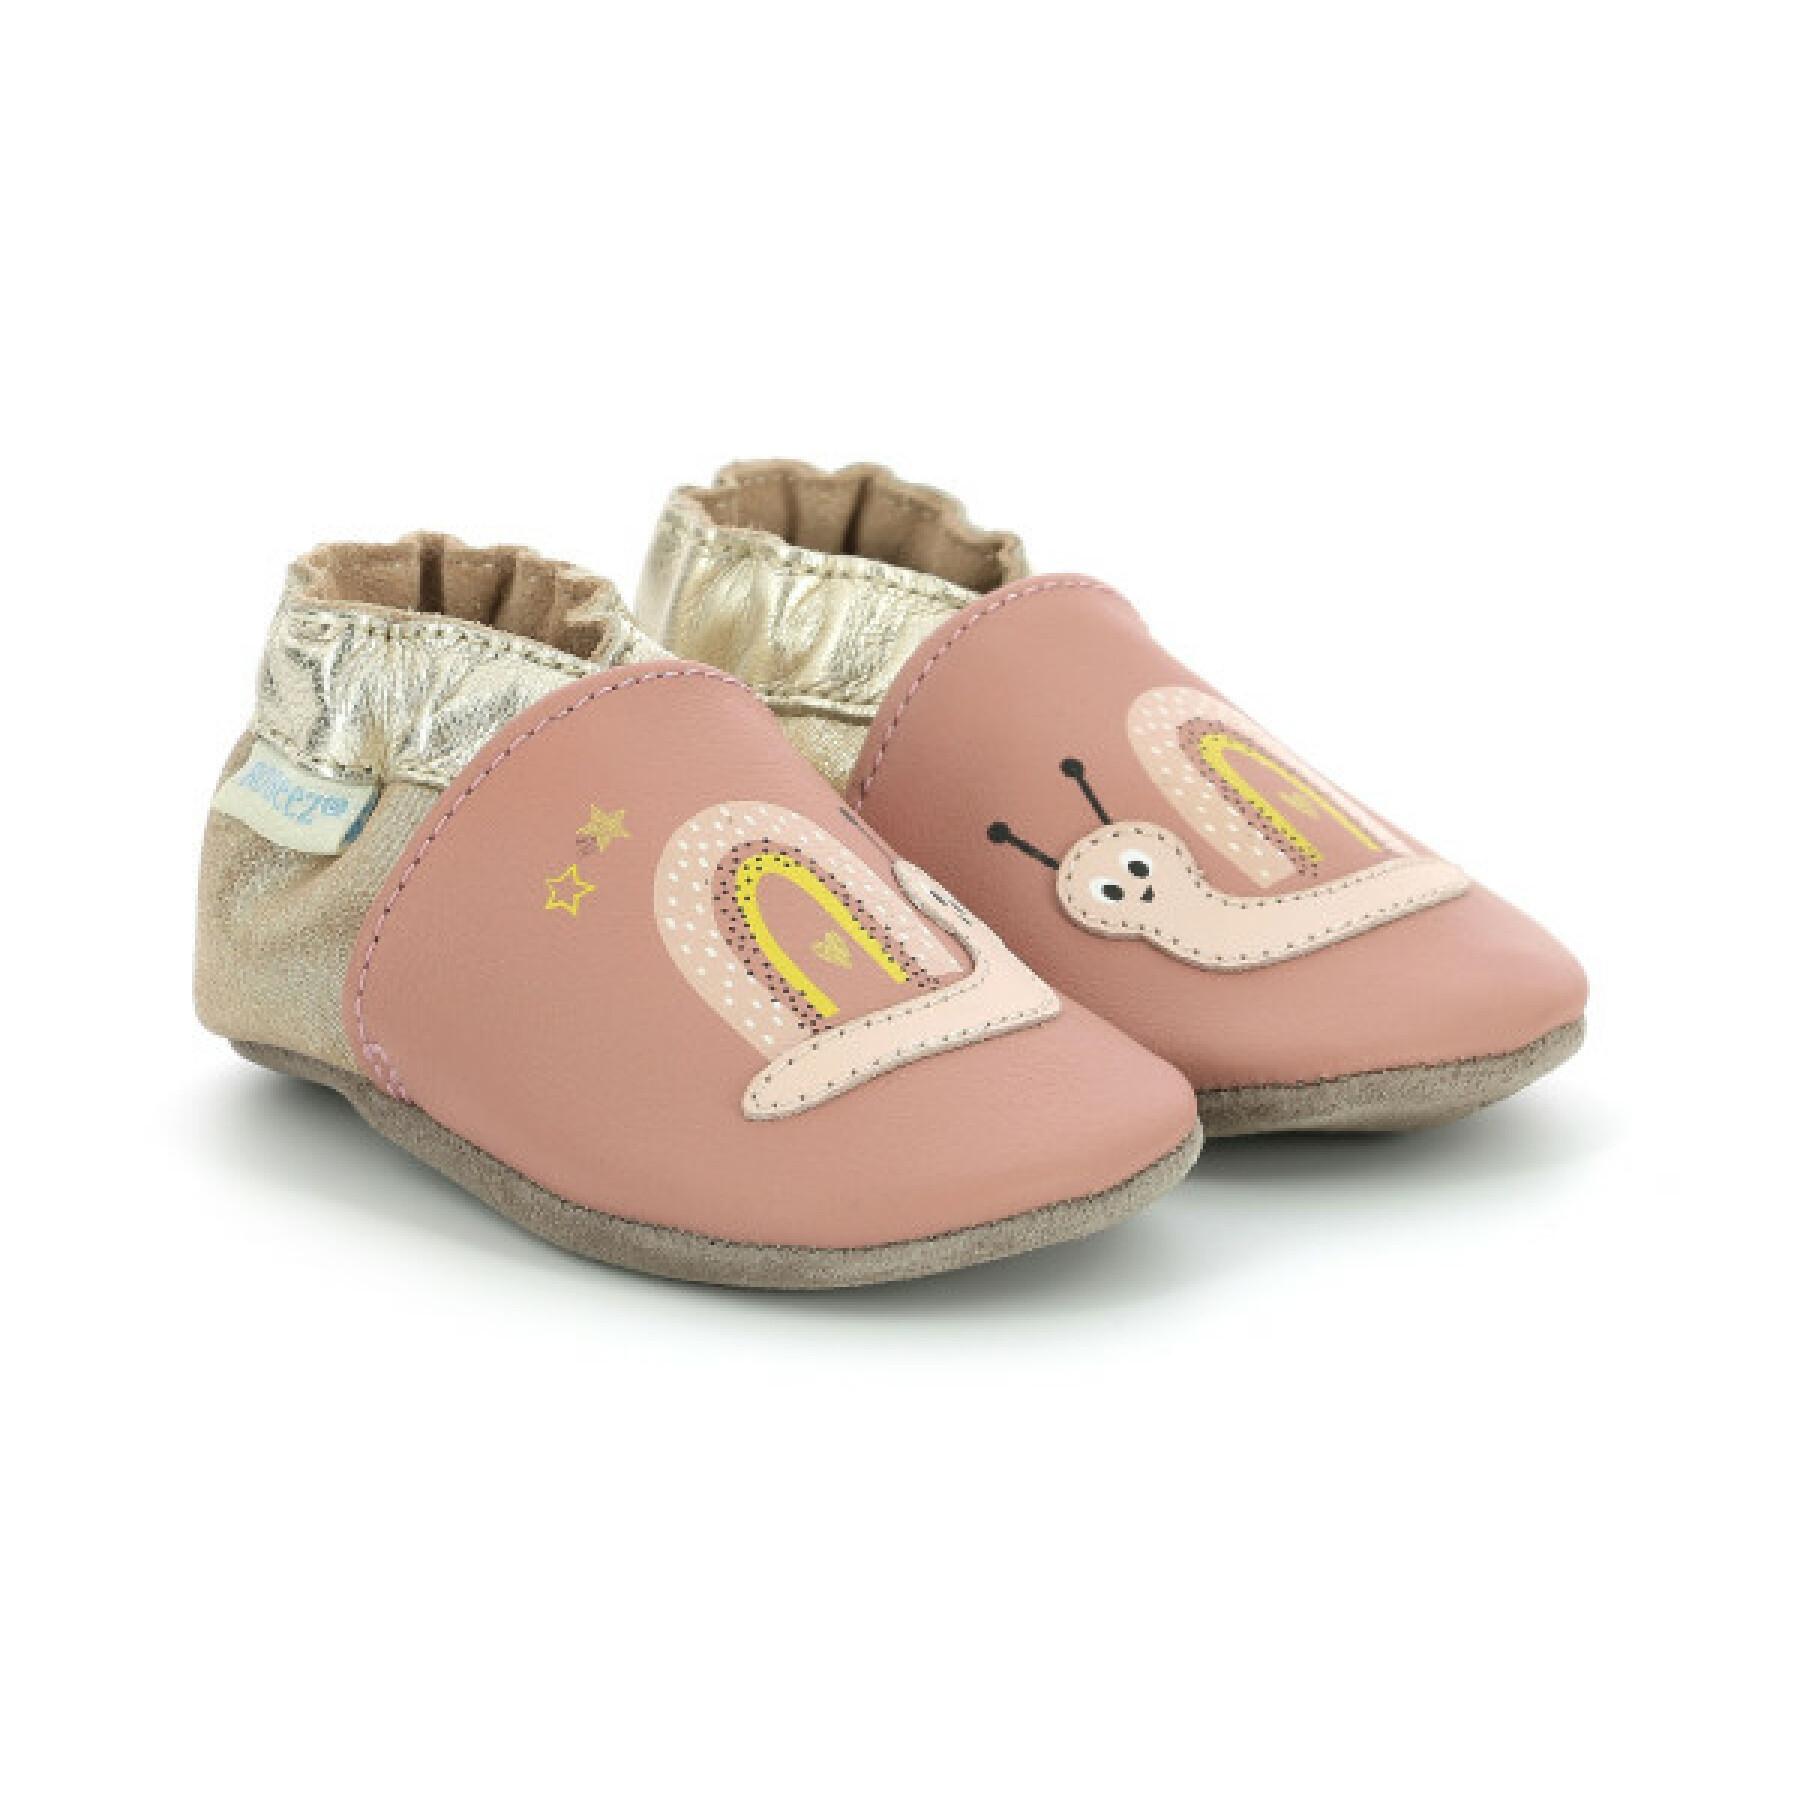 Marca: RobeezSpicy Hearts 19/20 rosa chiaro Pantofole da bambina 